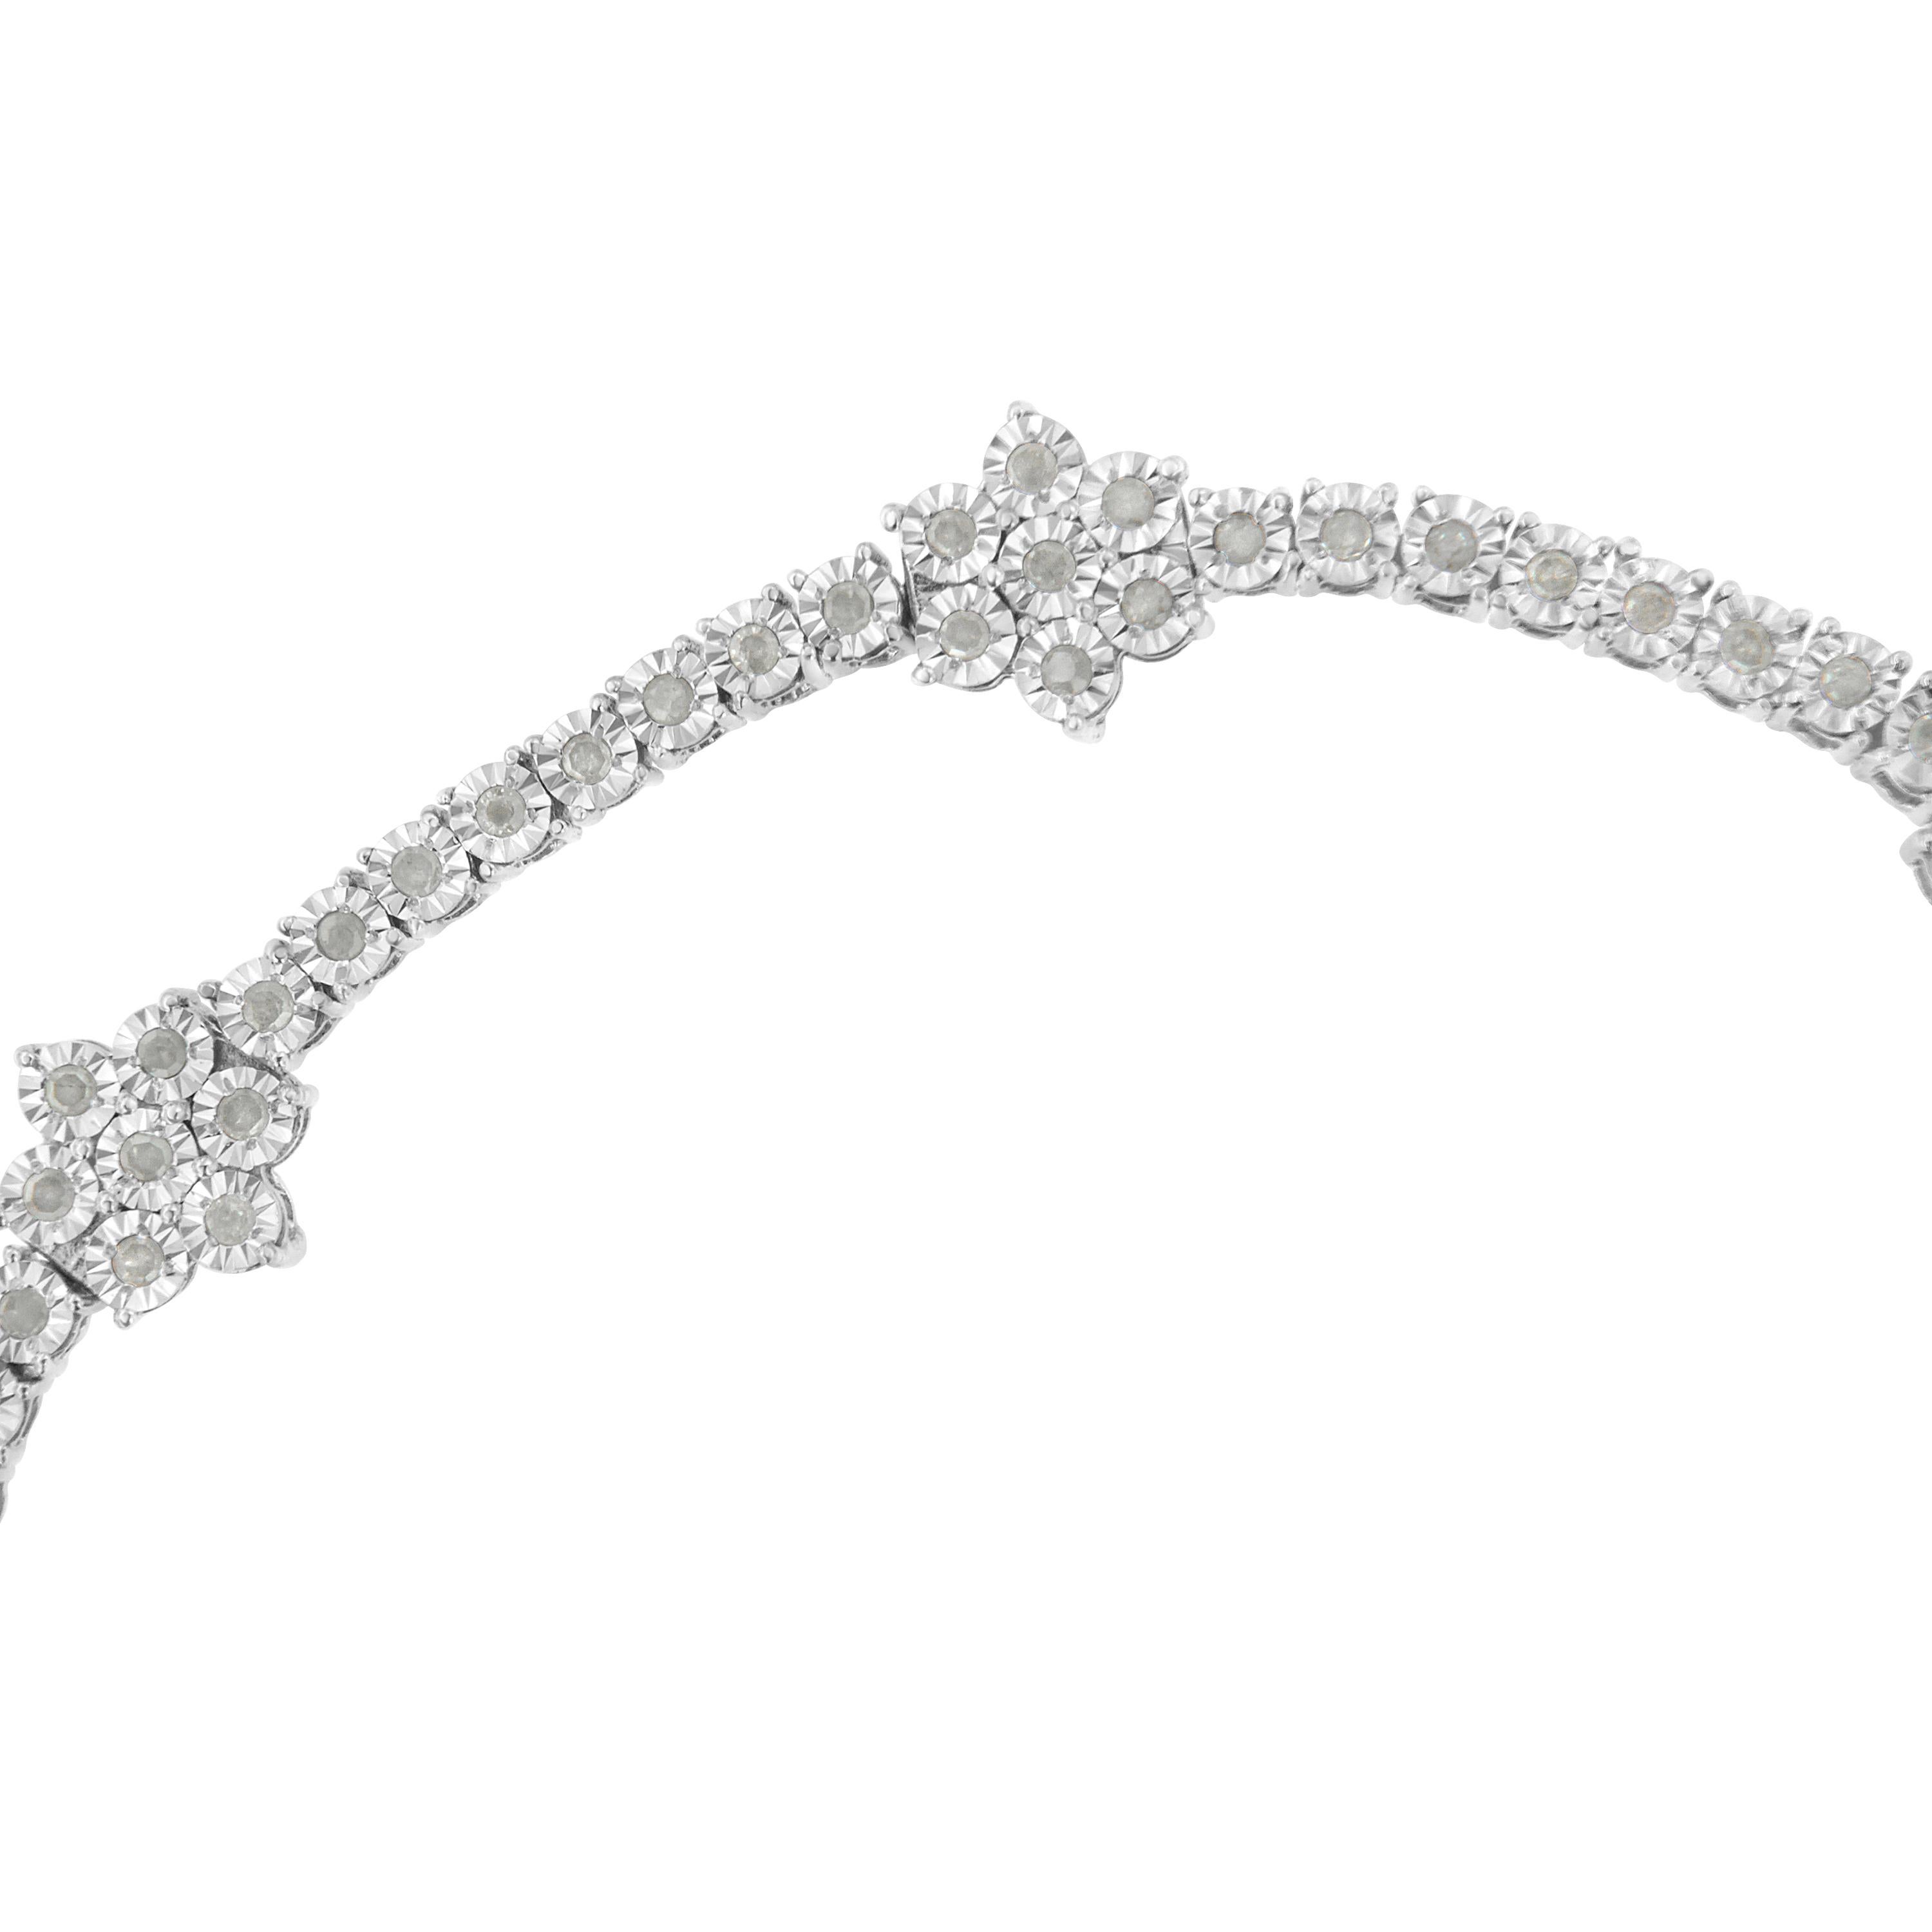 Élégant et intemporel, ce magnifique bracelet à maillons floraux en argent sterling présente des diamants ronds d'un poids total de 1,0 carat. Le bracelet tennis comporte des maillons groupés ronds, en forme de fleur, ainsi que des maillons